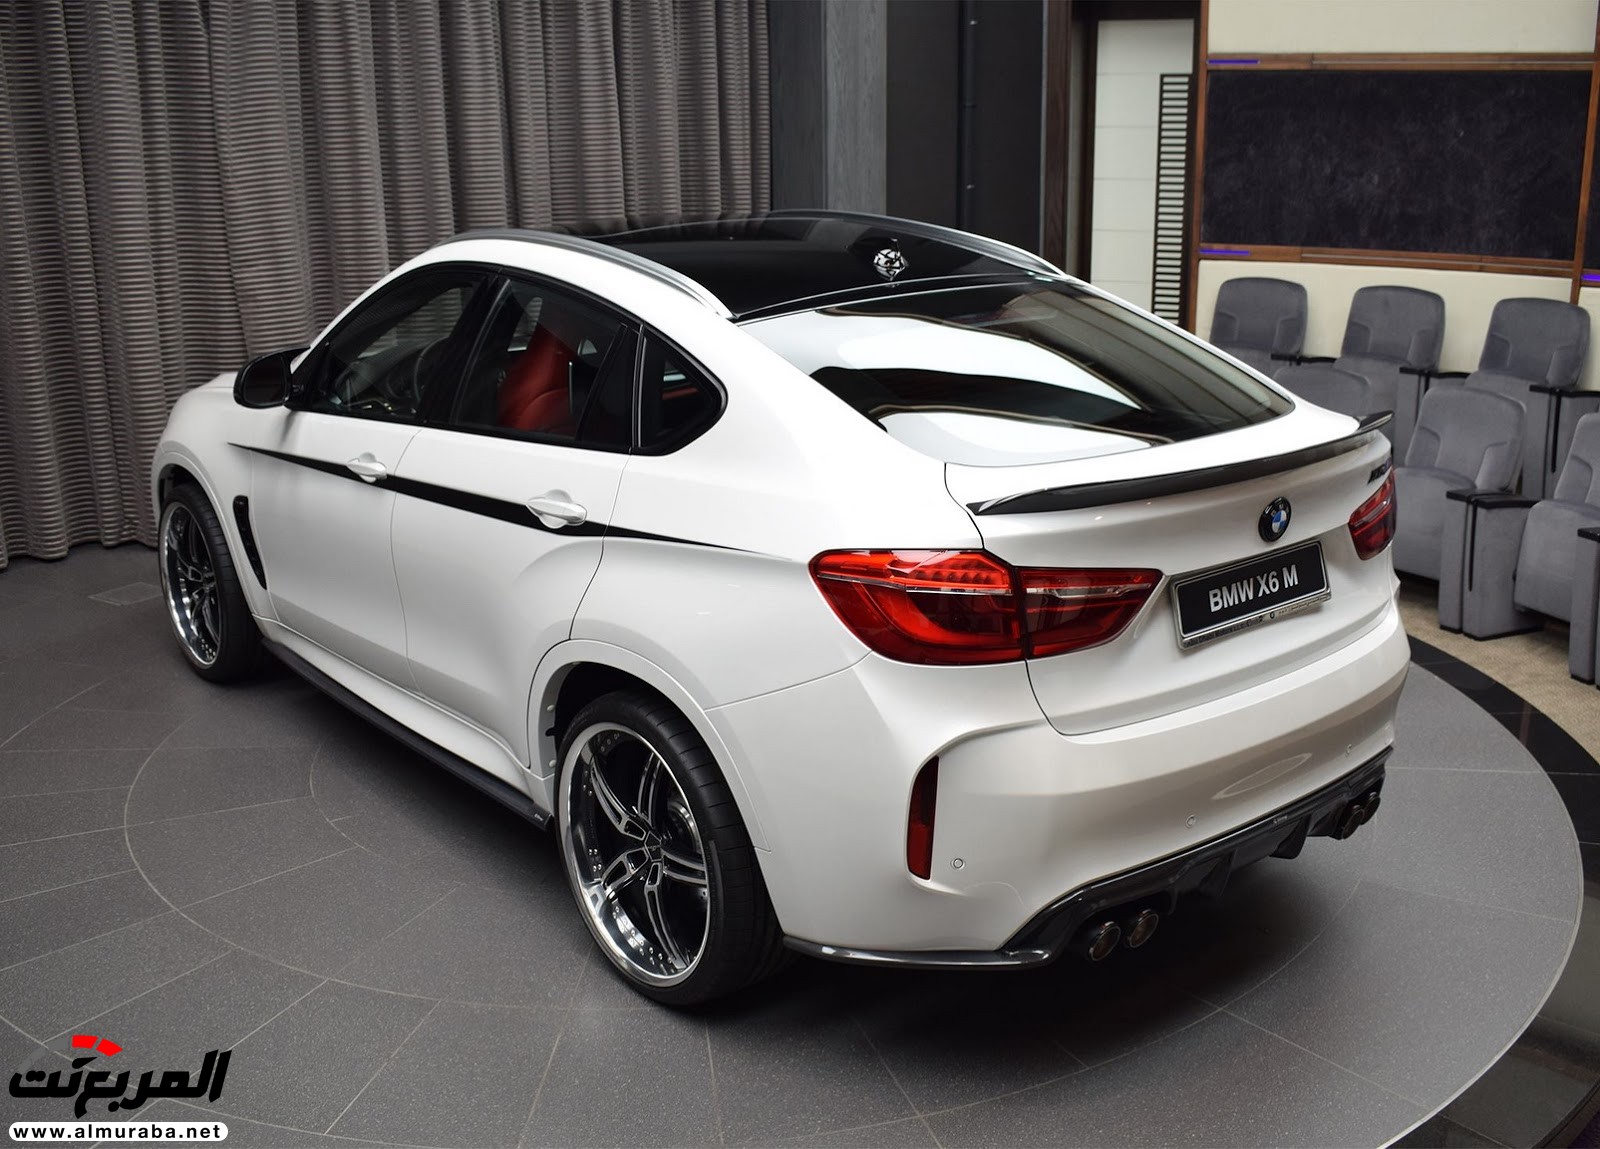 "بي إم دبليو" X6 M عالية الأداء معدّلة بتصاميم 3D معروضة بأبو ظبي BMW 74